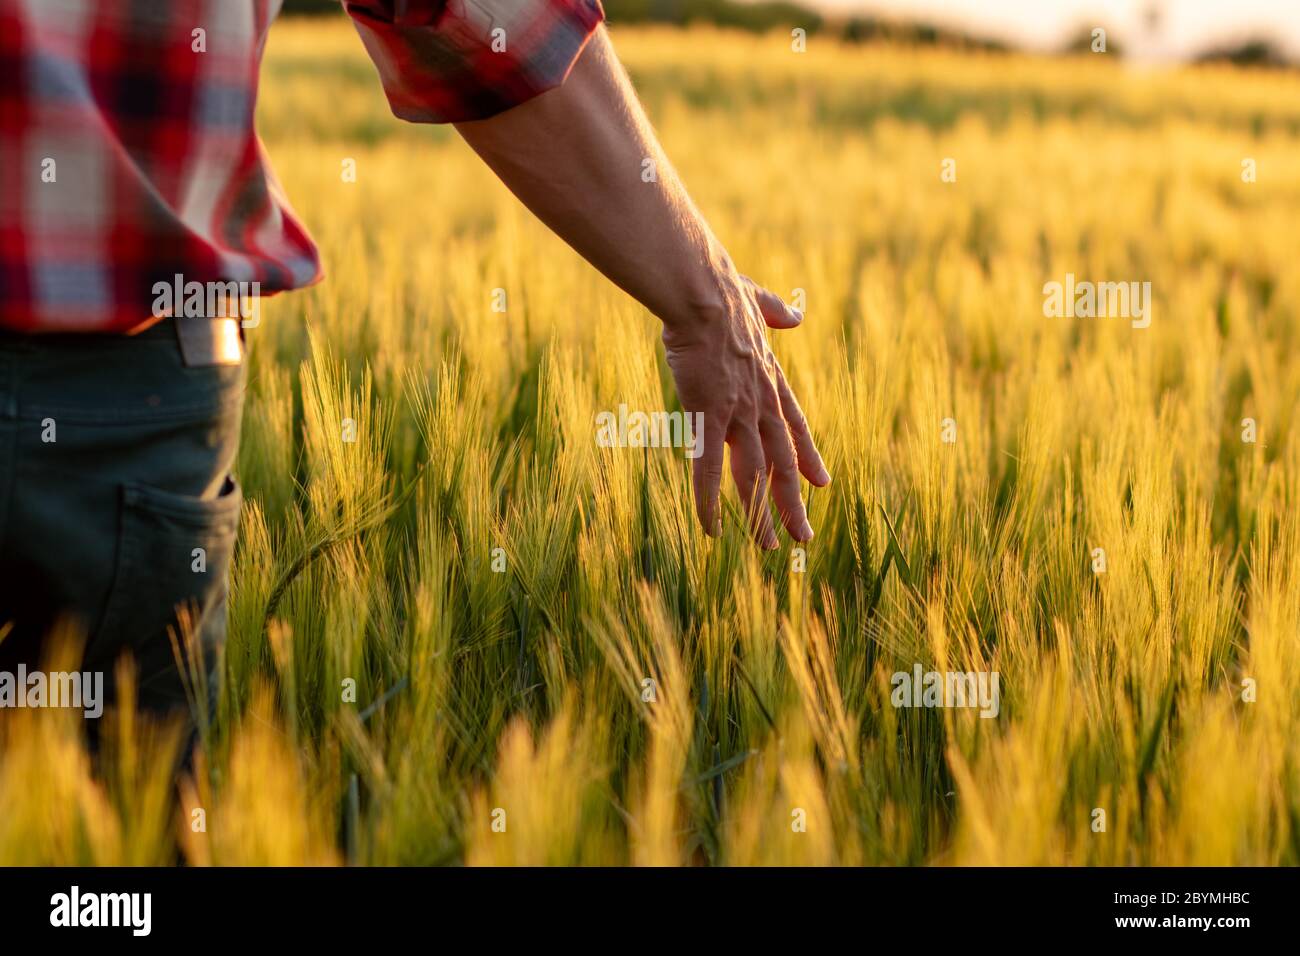 Landwirt oder Agronom, der im Sonnenuntergang durch das Feld geht und die Goldweizenernte kontrolliert. Hand berühren Reifung Weizenkörner im Frühsommer. Stockfoto